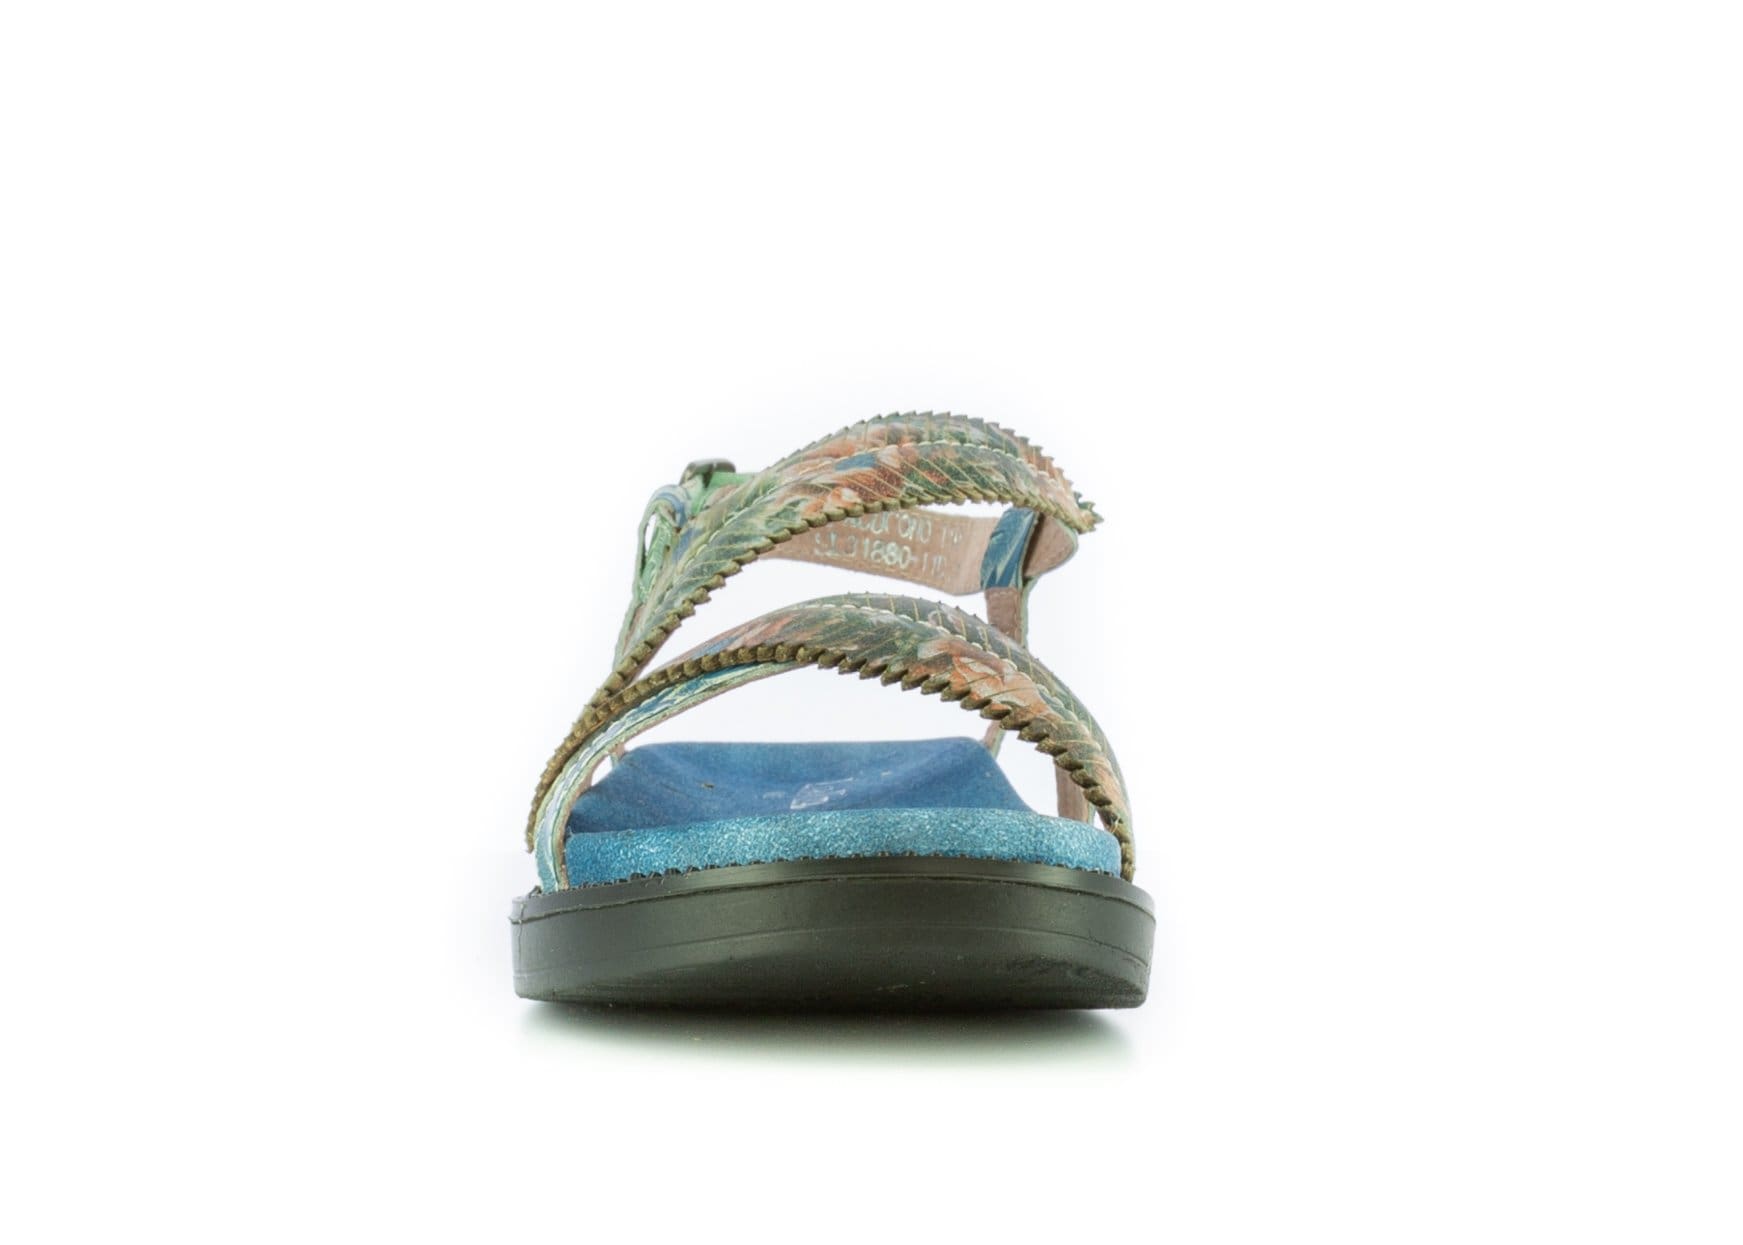 Schuhe FACUCONO 21 - Sandale